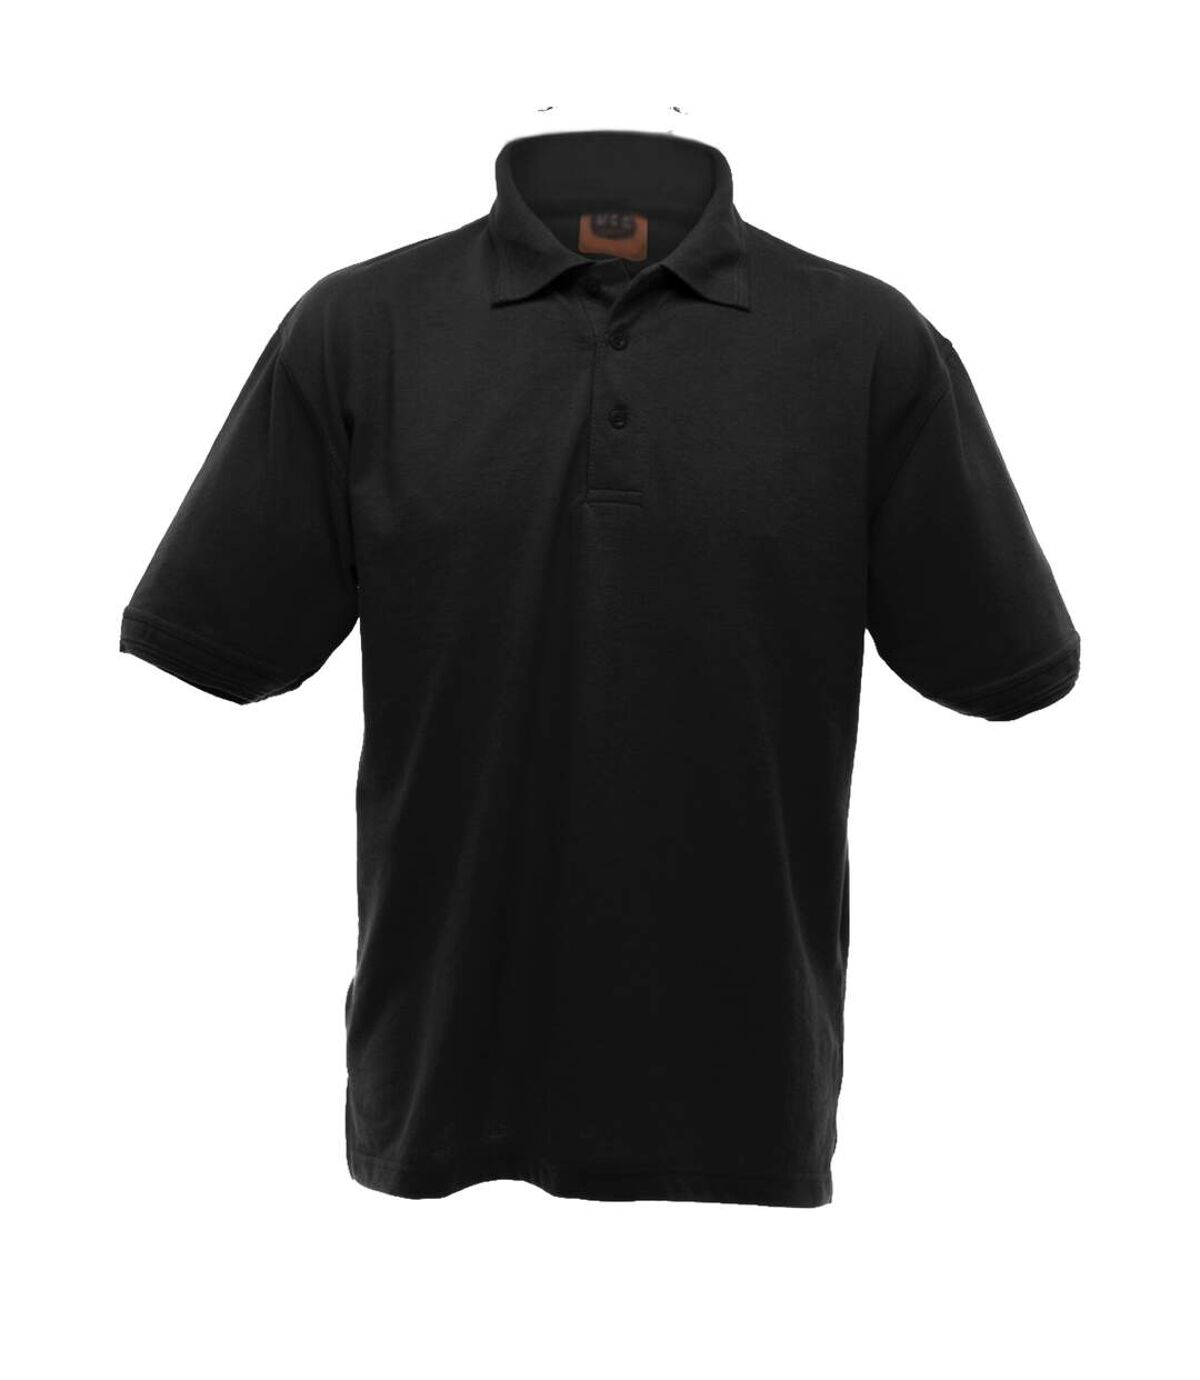 UCC 50/50 Mens Heavyweight Plain Pique Short Sleeve Polo Shirt (Black) - UTBC1195